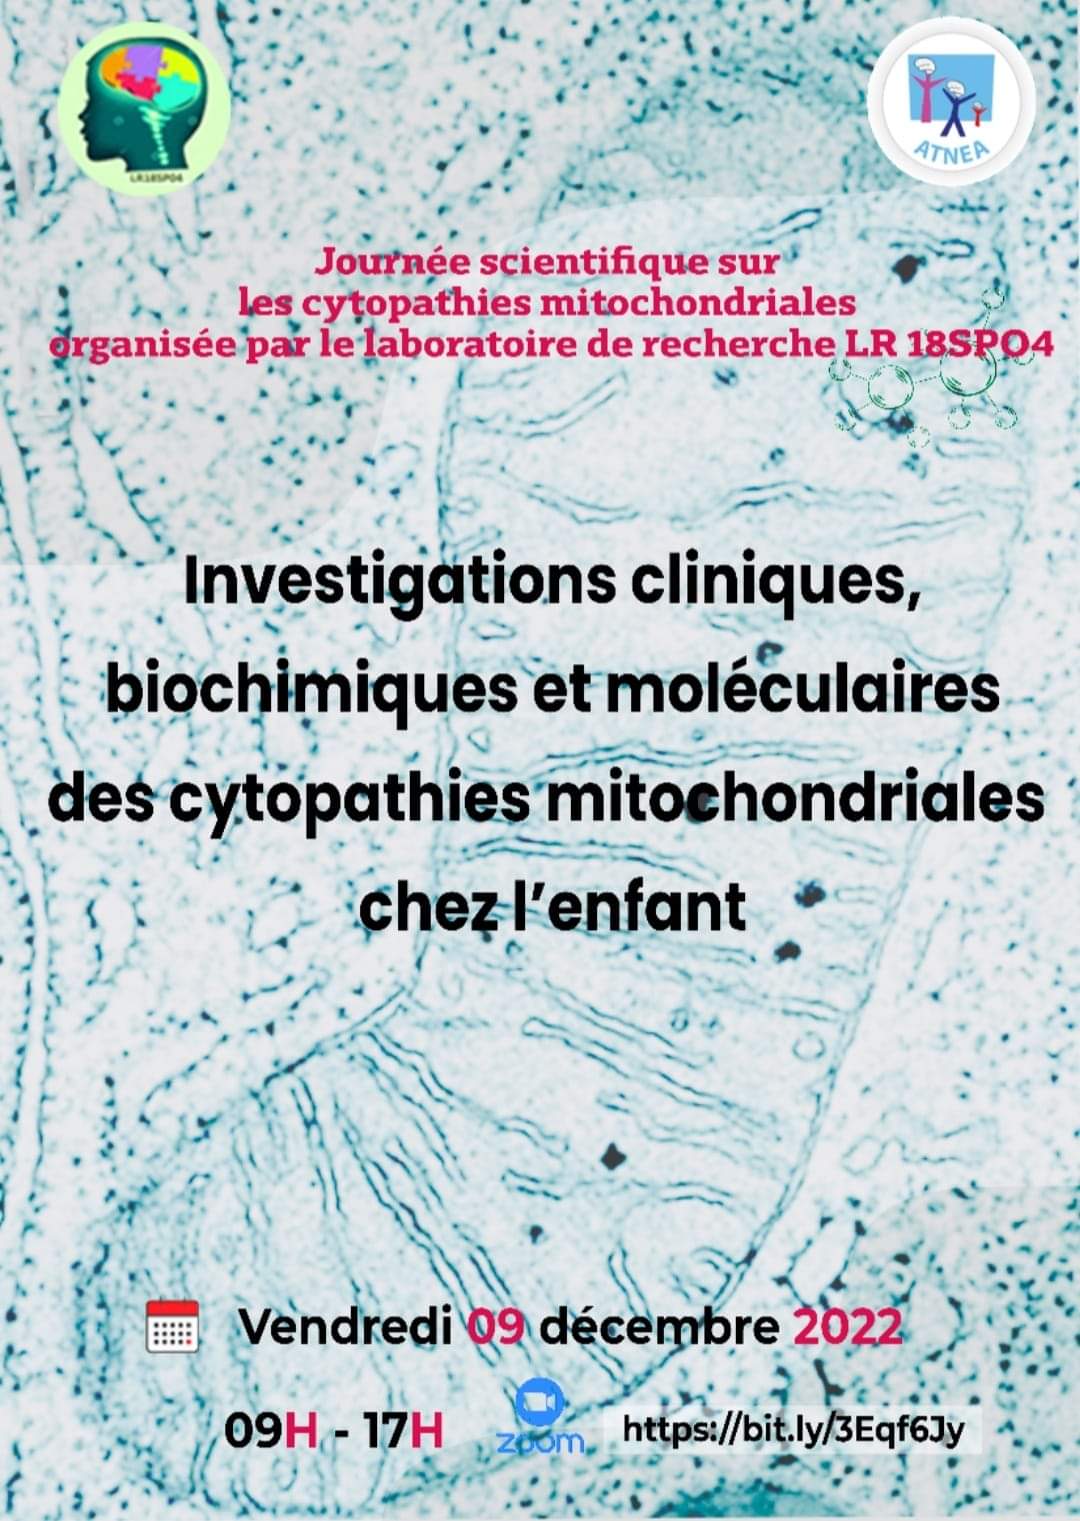 Journée scientifique sur les cytopathies mitochondriales organisée par le laboratoire de recherche LR 18SP04